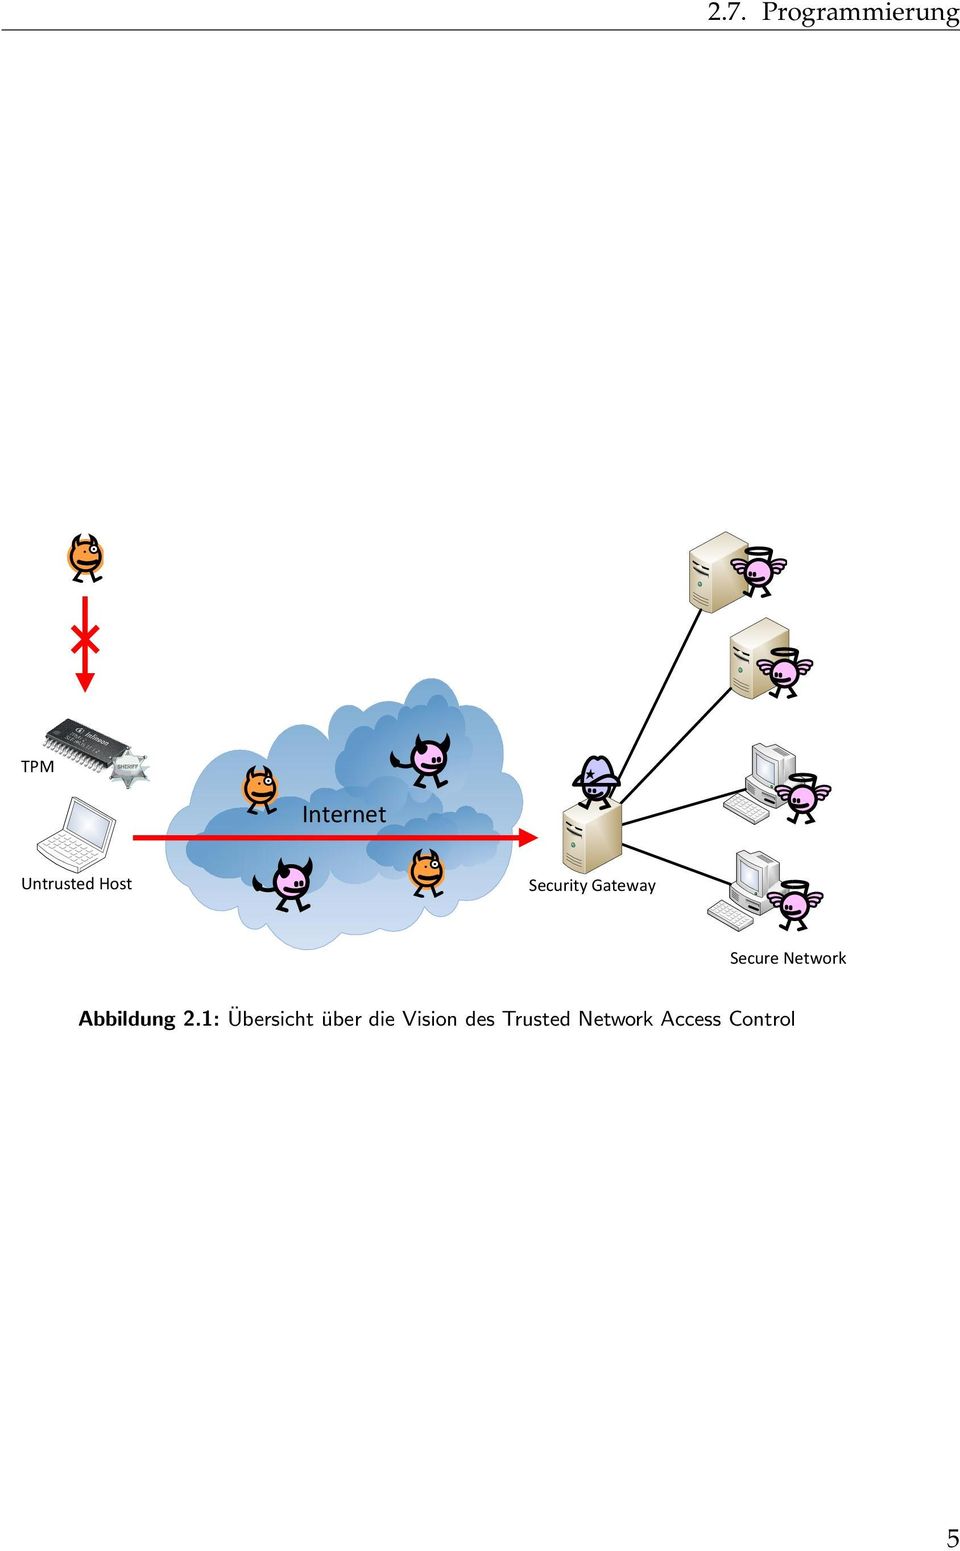 Network Abbildung 2.